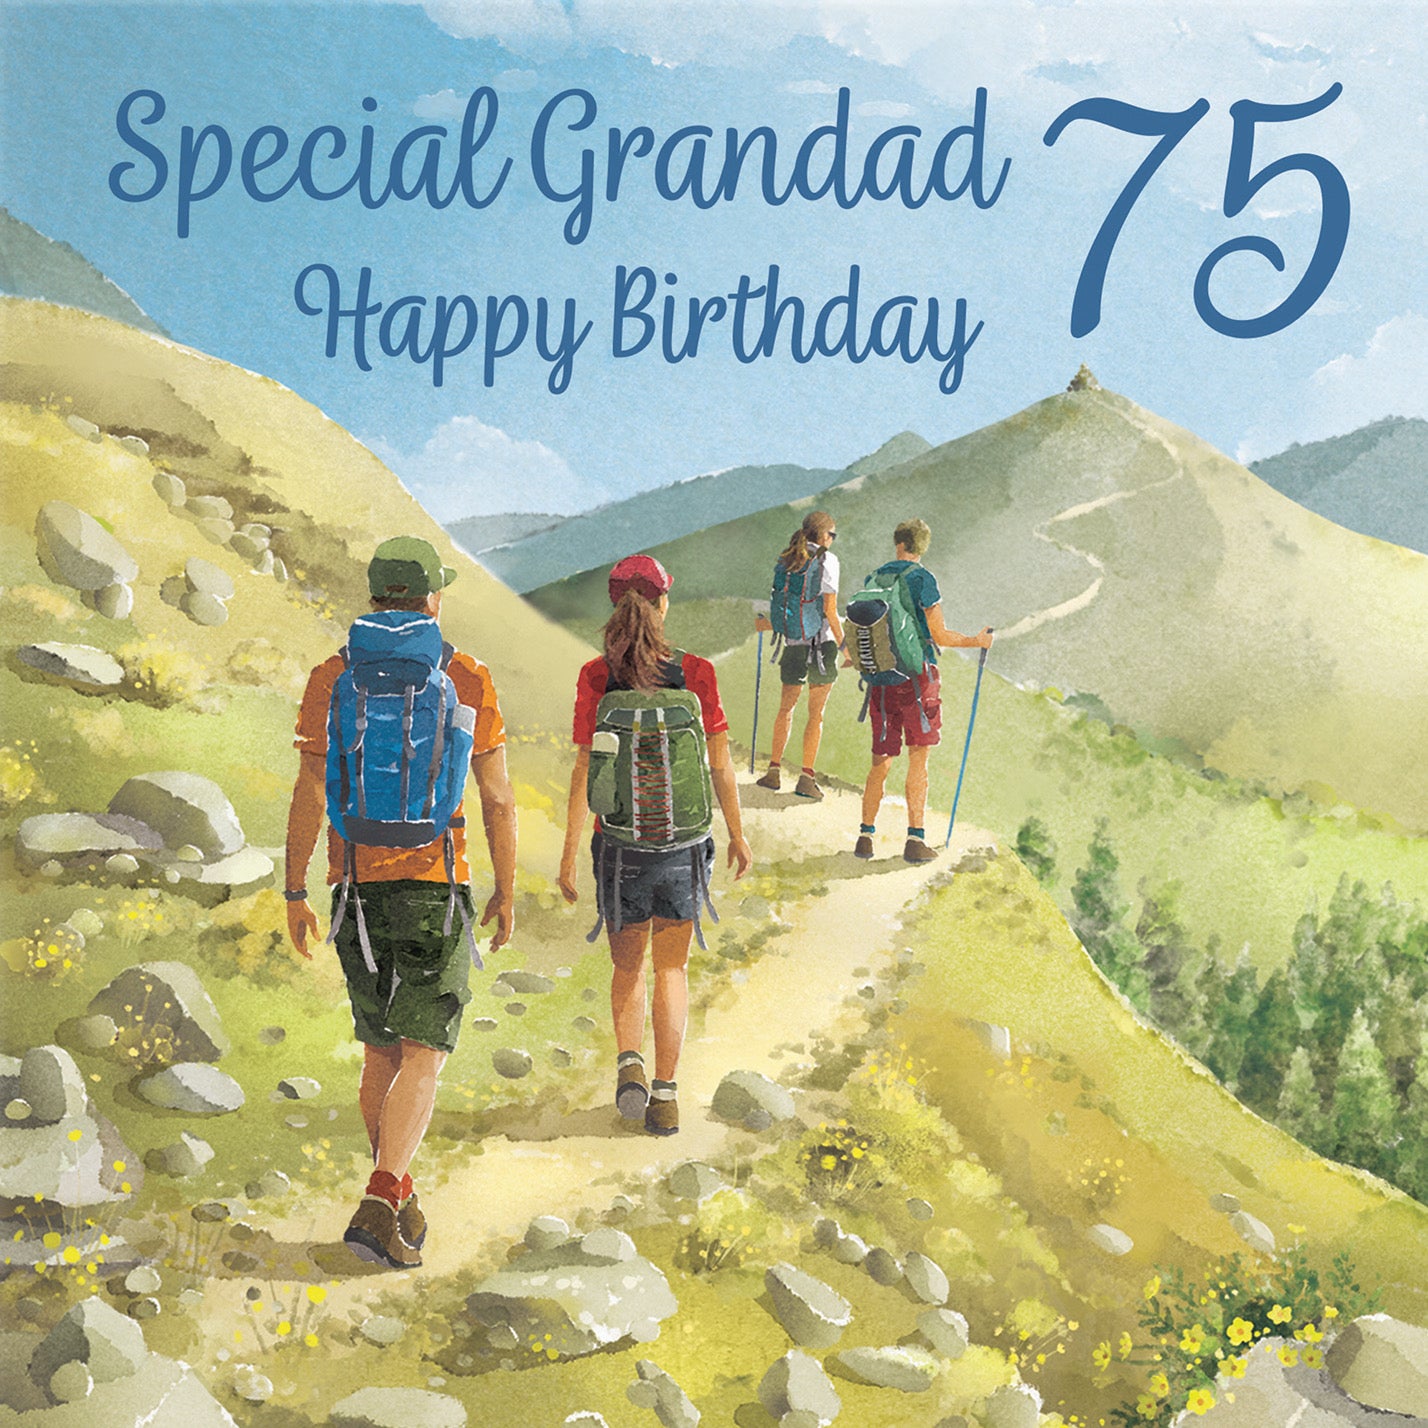 75th Grandad Walking Birthday Card Milo's Gallery - Default Title (B0CR1SBRWC)